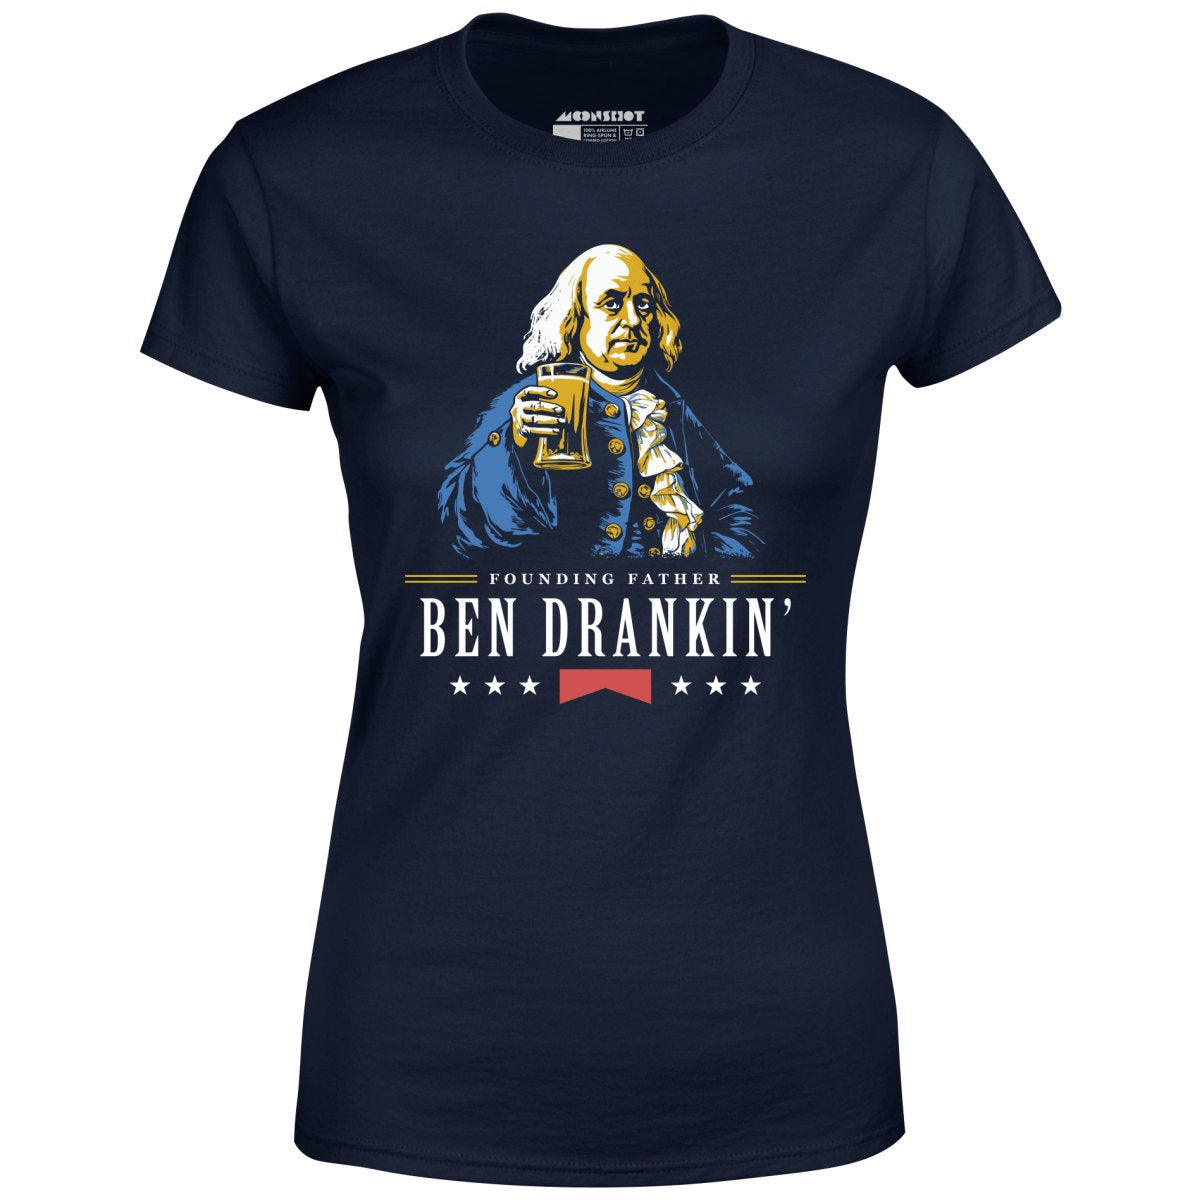 Ben Drankin' Founding Father - Women's T-Shirt